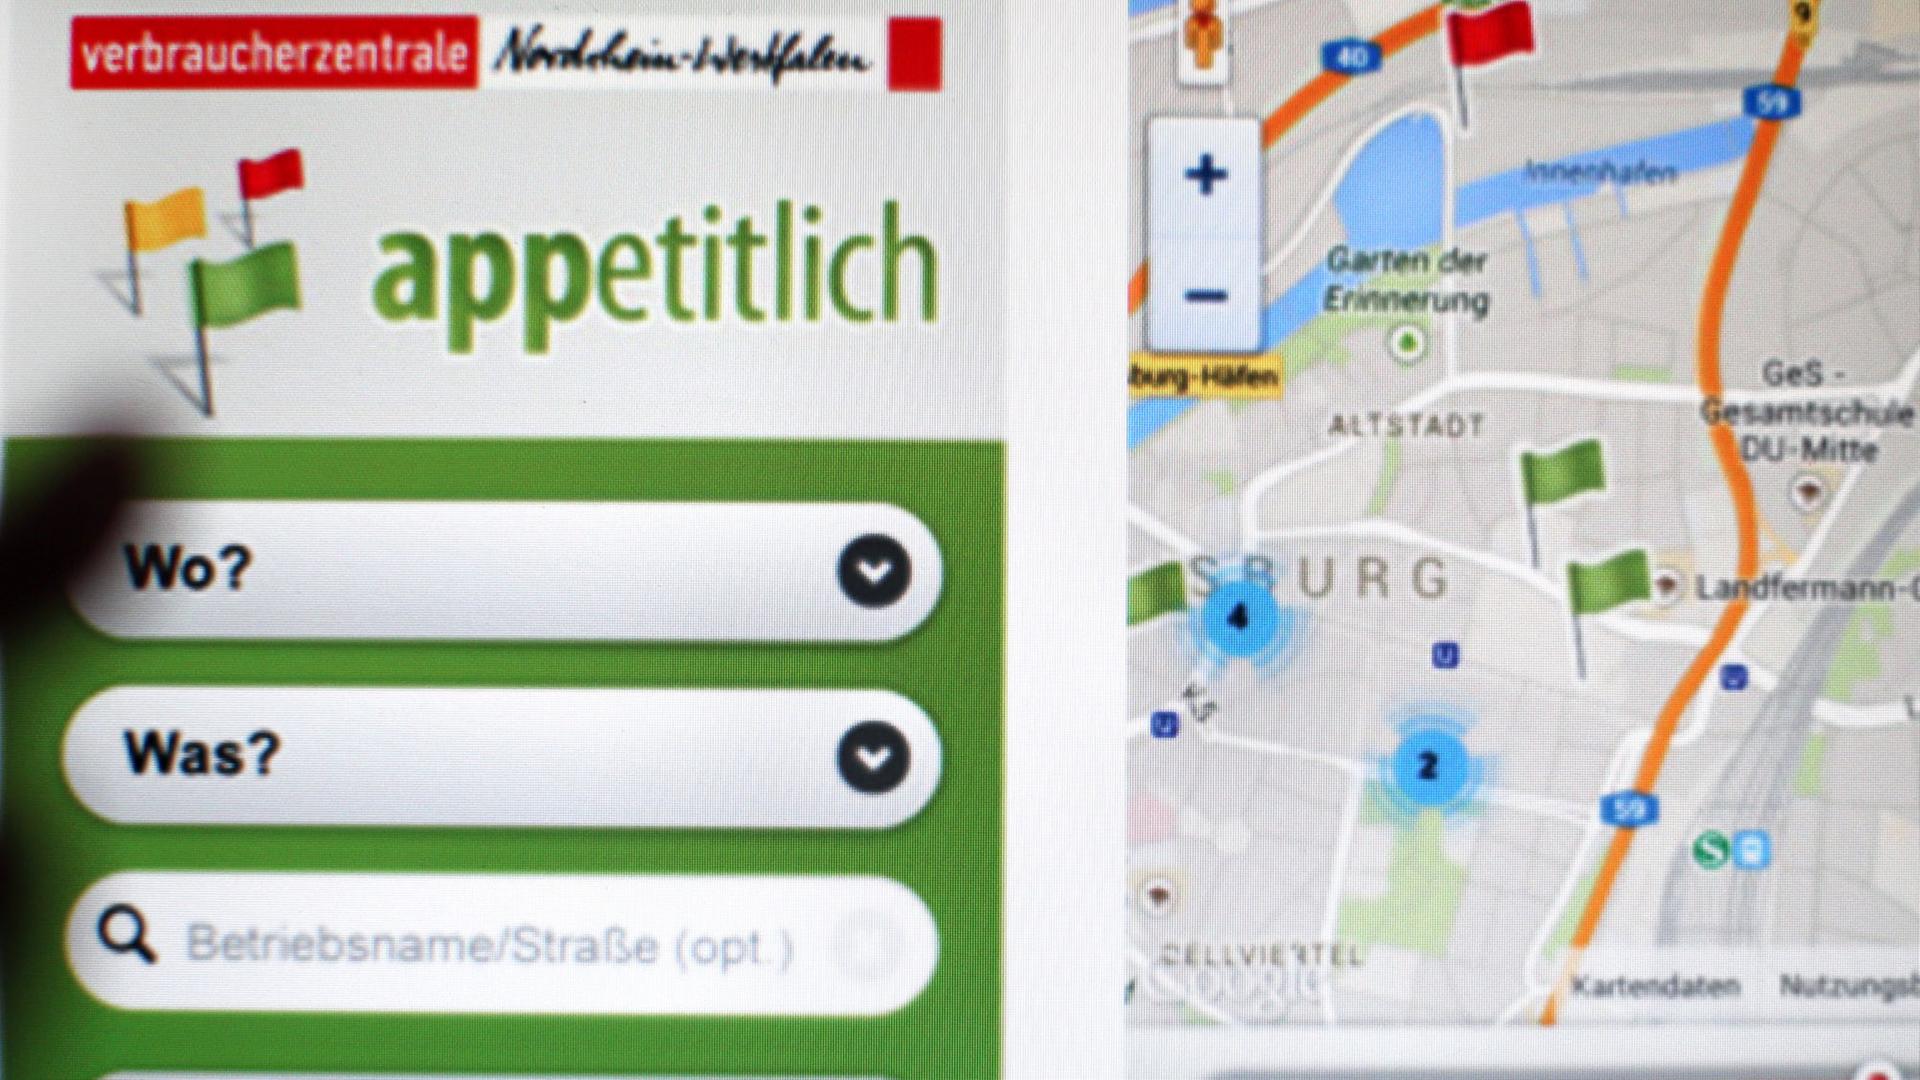 Auf der Internetseite der Verbraucherzentrale NRW wird die App "appetitlich" des Gastro-Kontrollbarometers gezeigt.